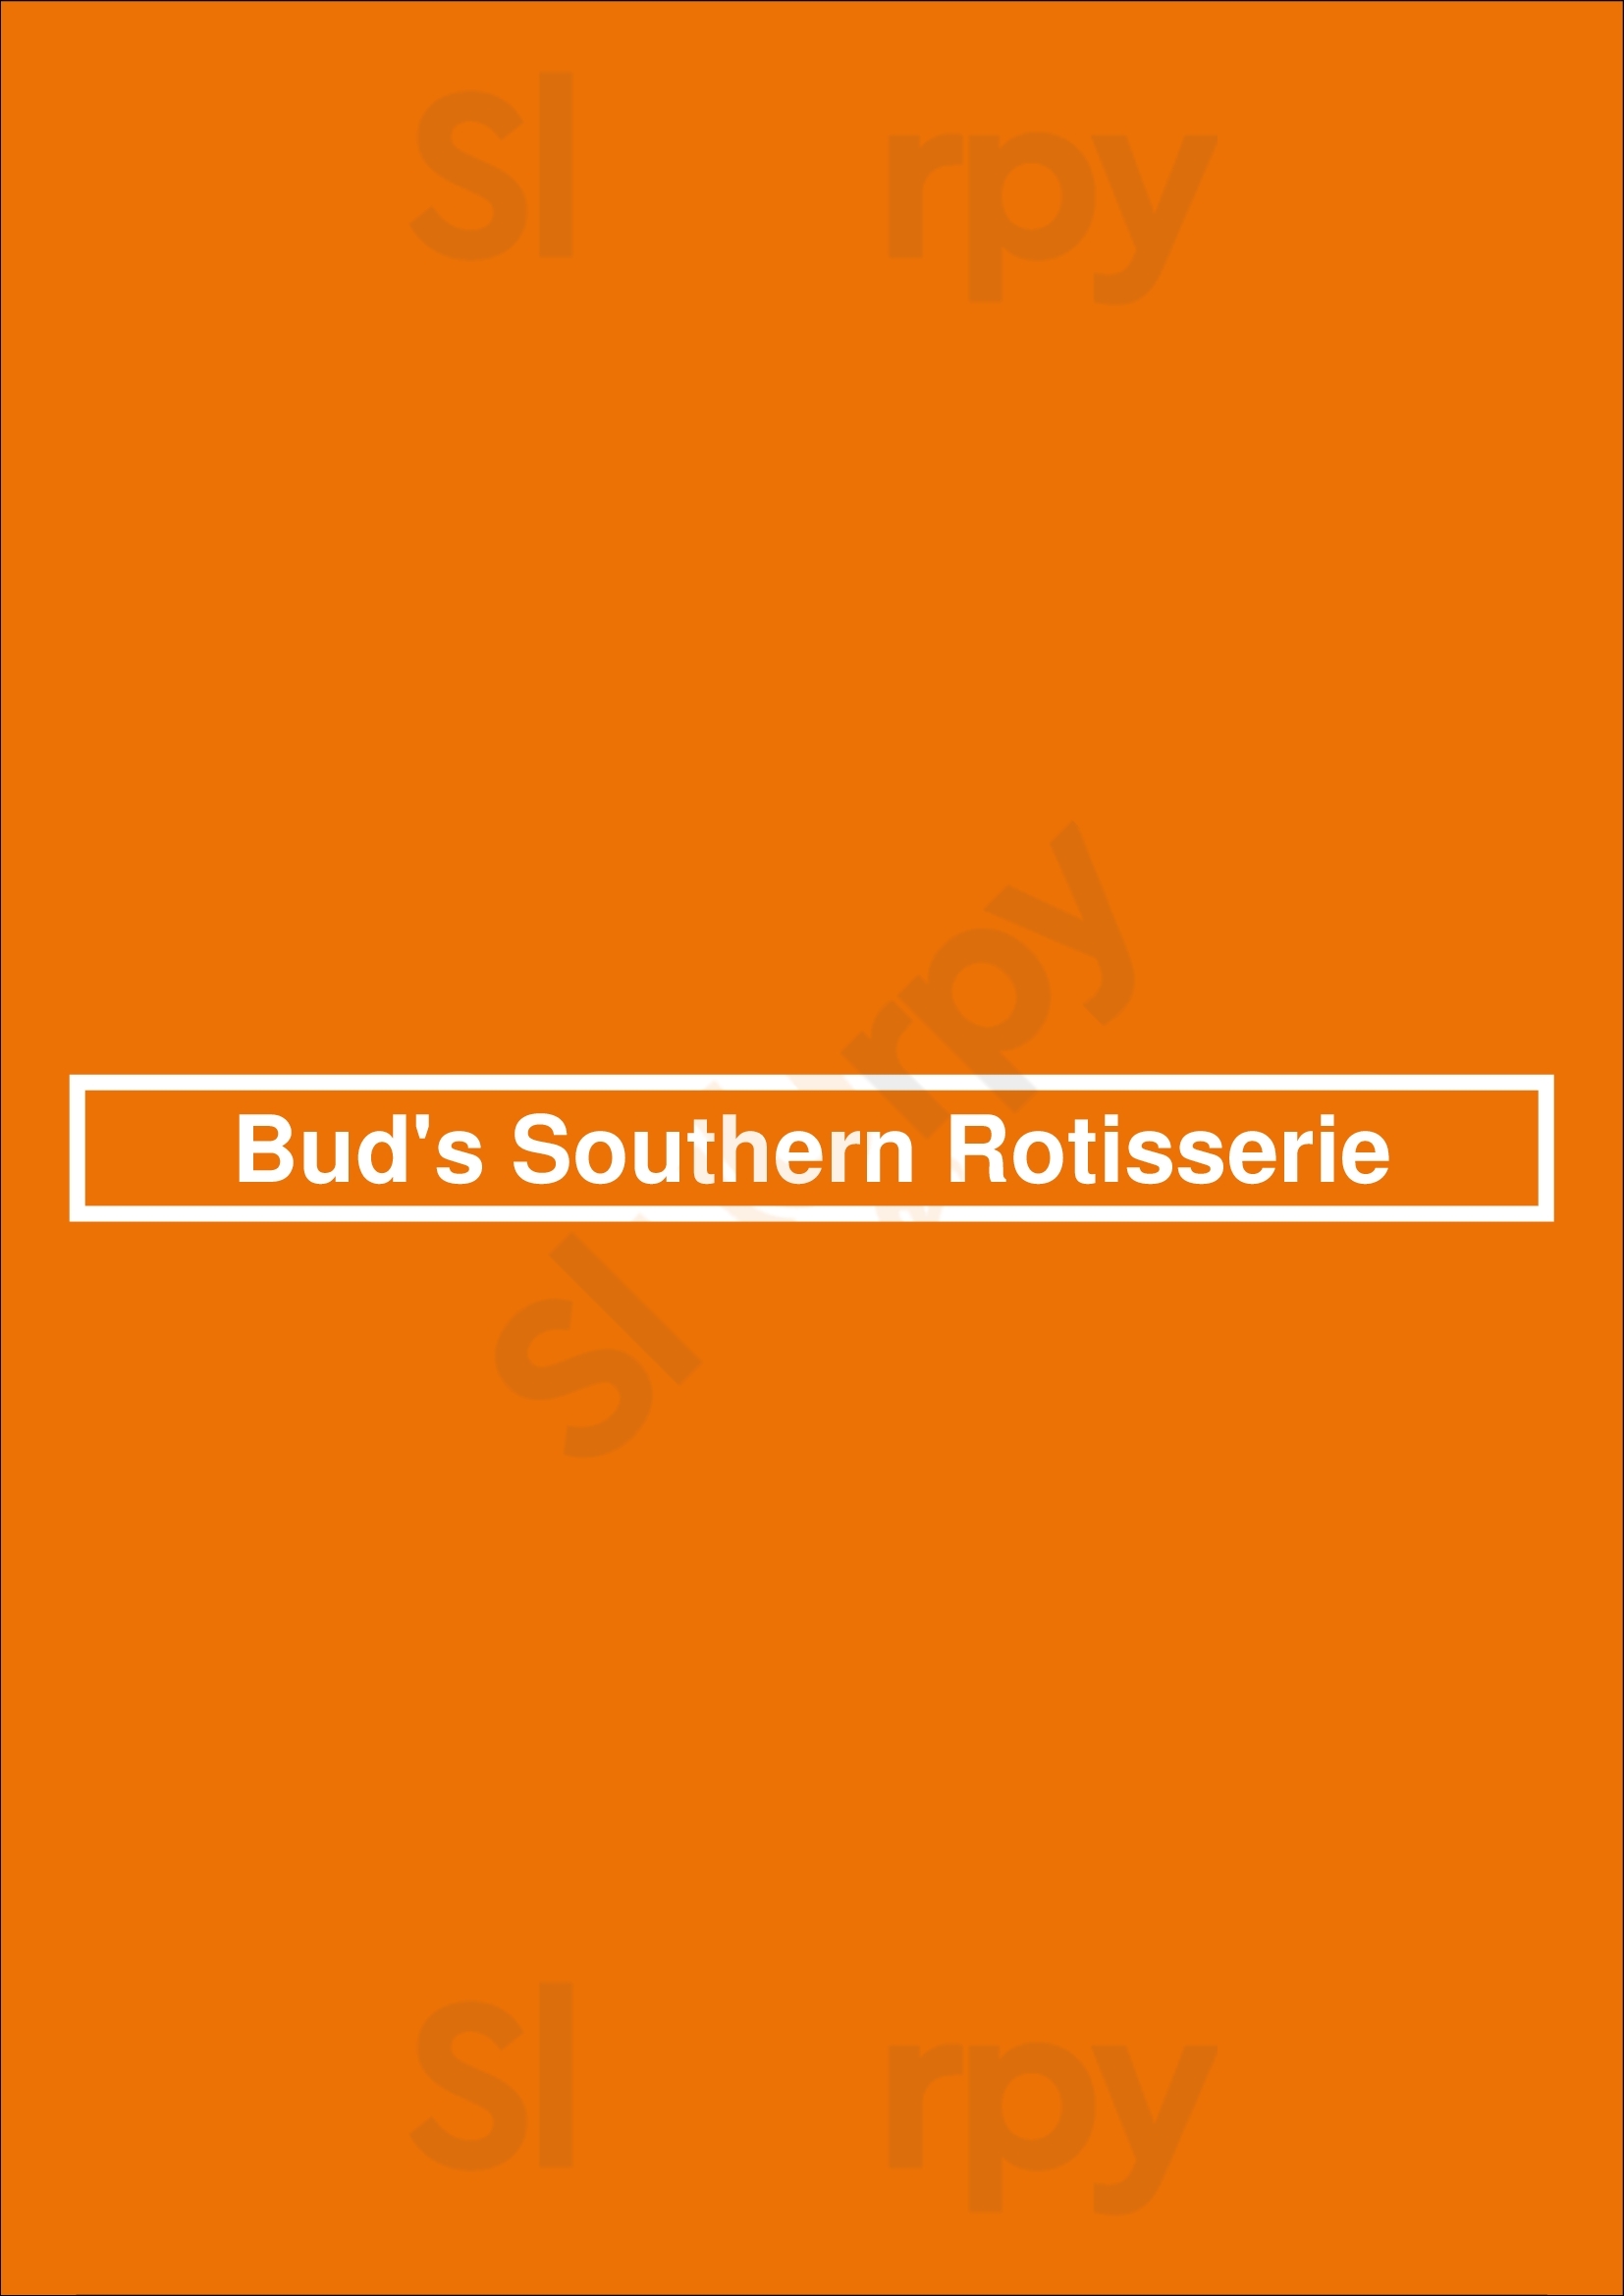 Bud's Southern Rotisserie San Antonio Menu - 1